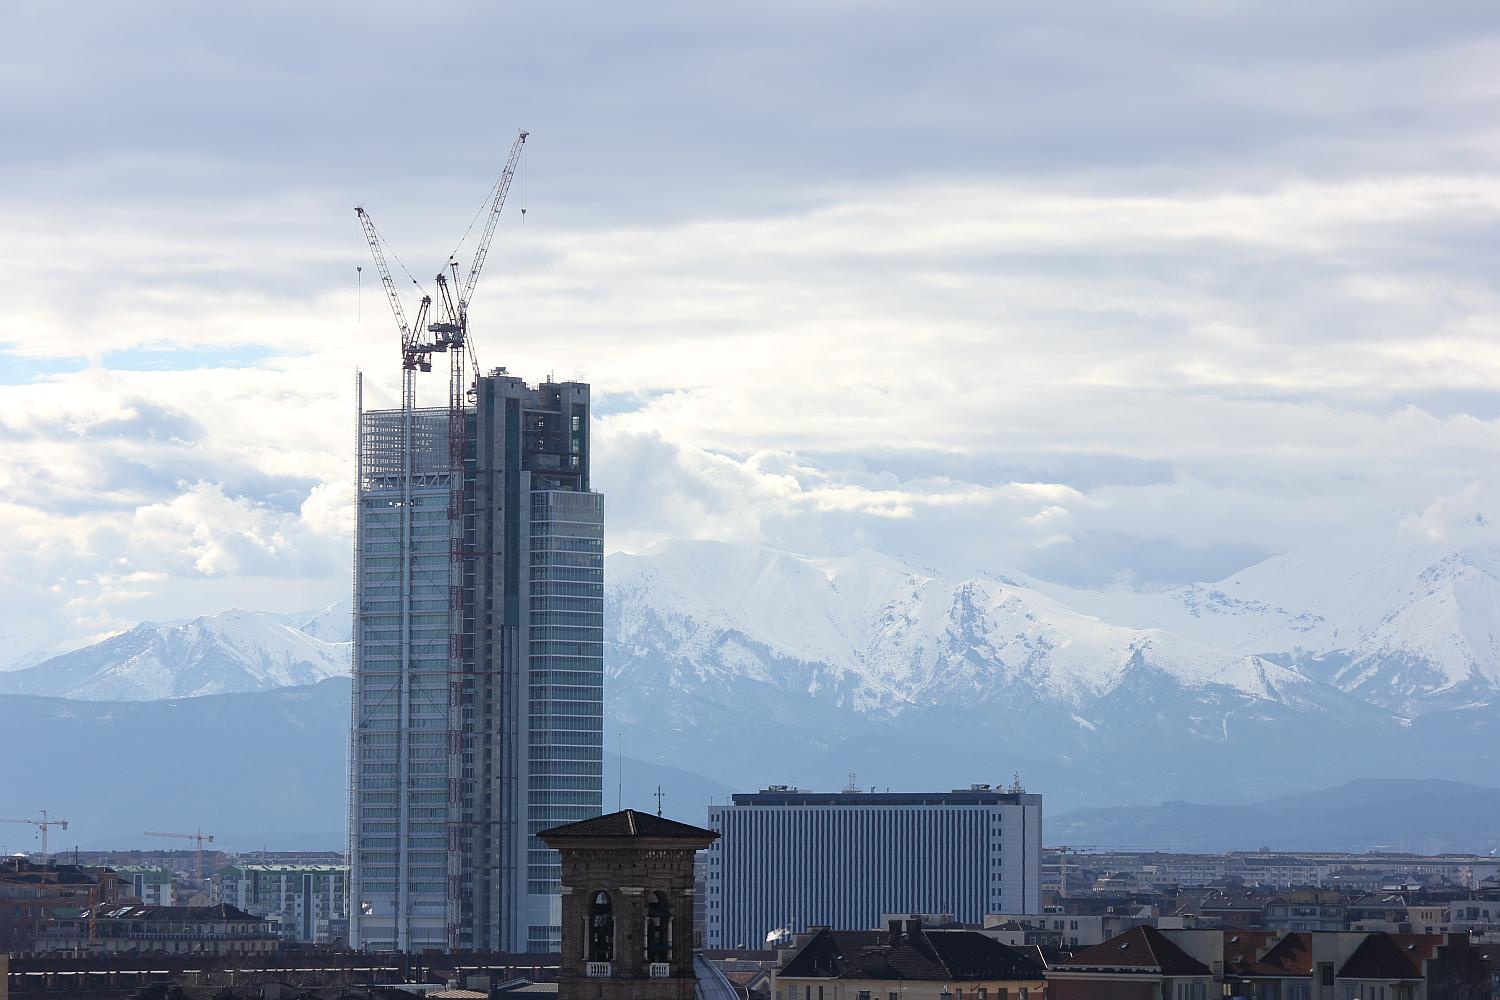 Visita guidata gratuita al Grattacielo Intesa Sanpaolo: riapre al pubblico il capolavoro di Renzo Piano